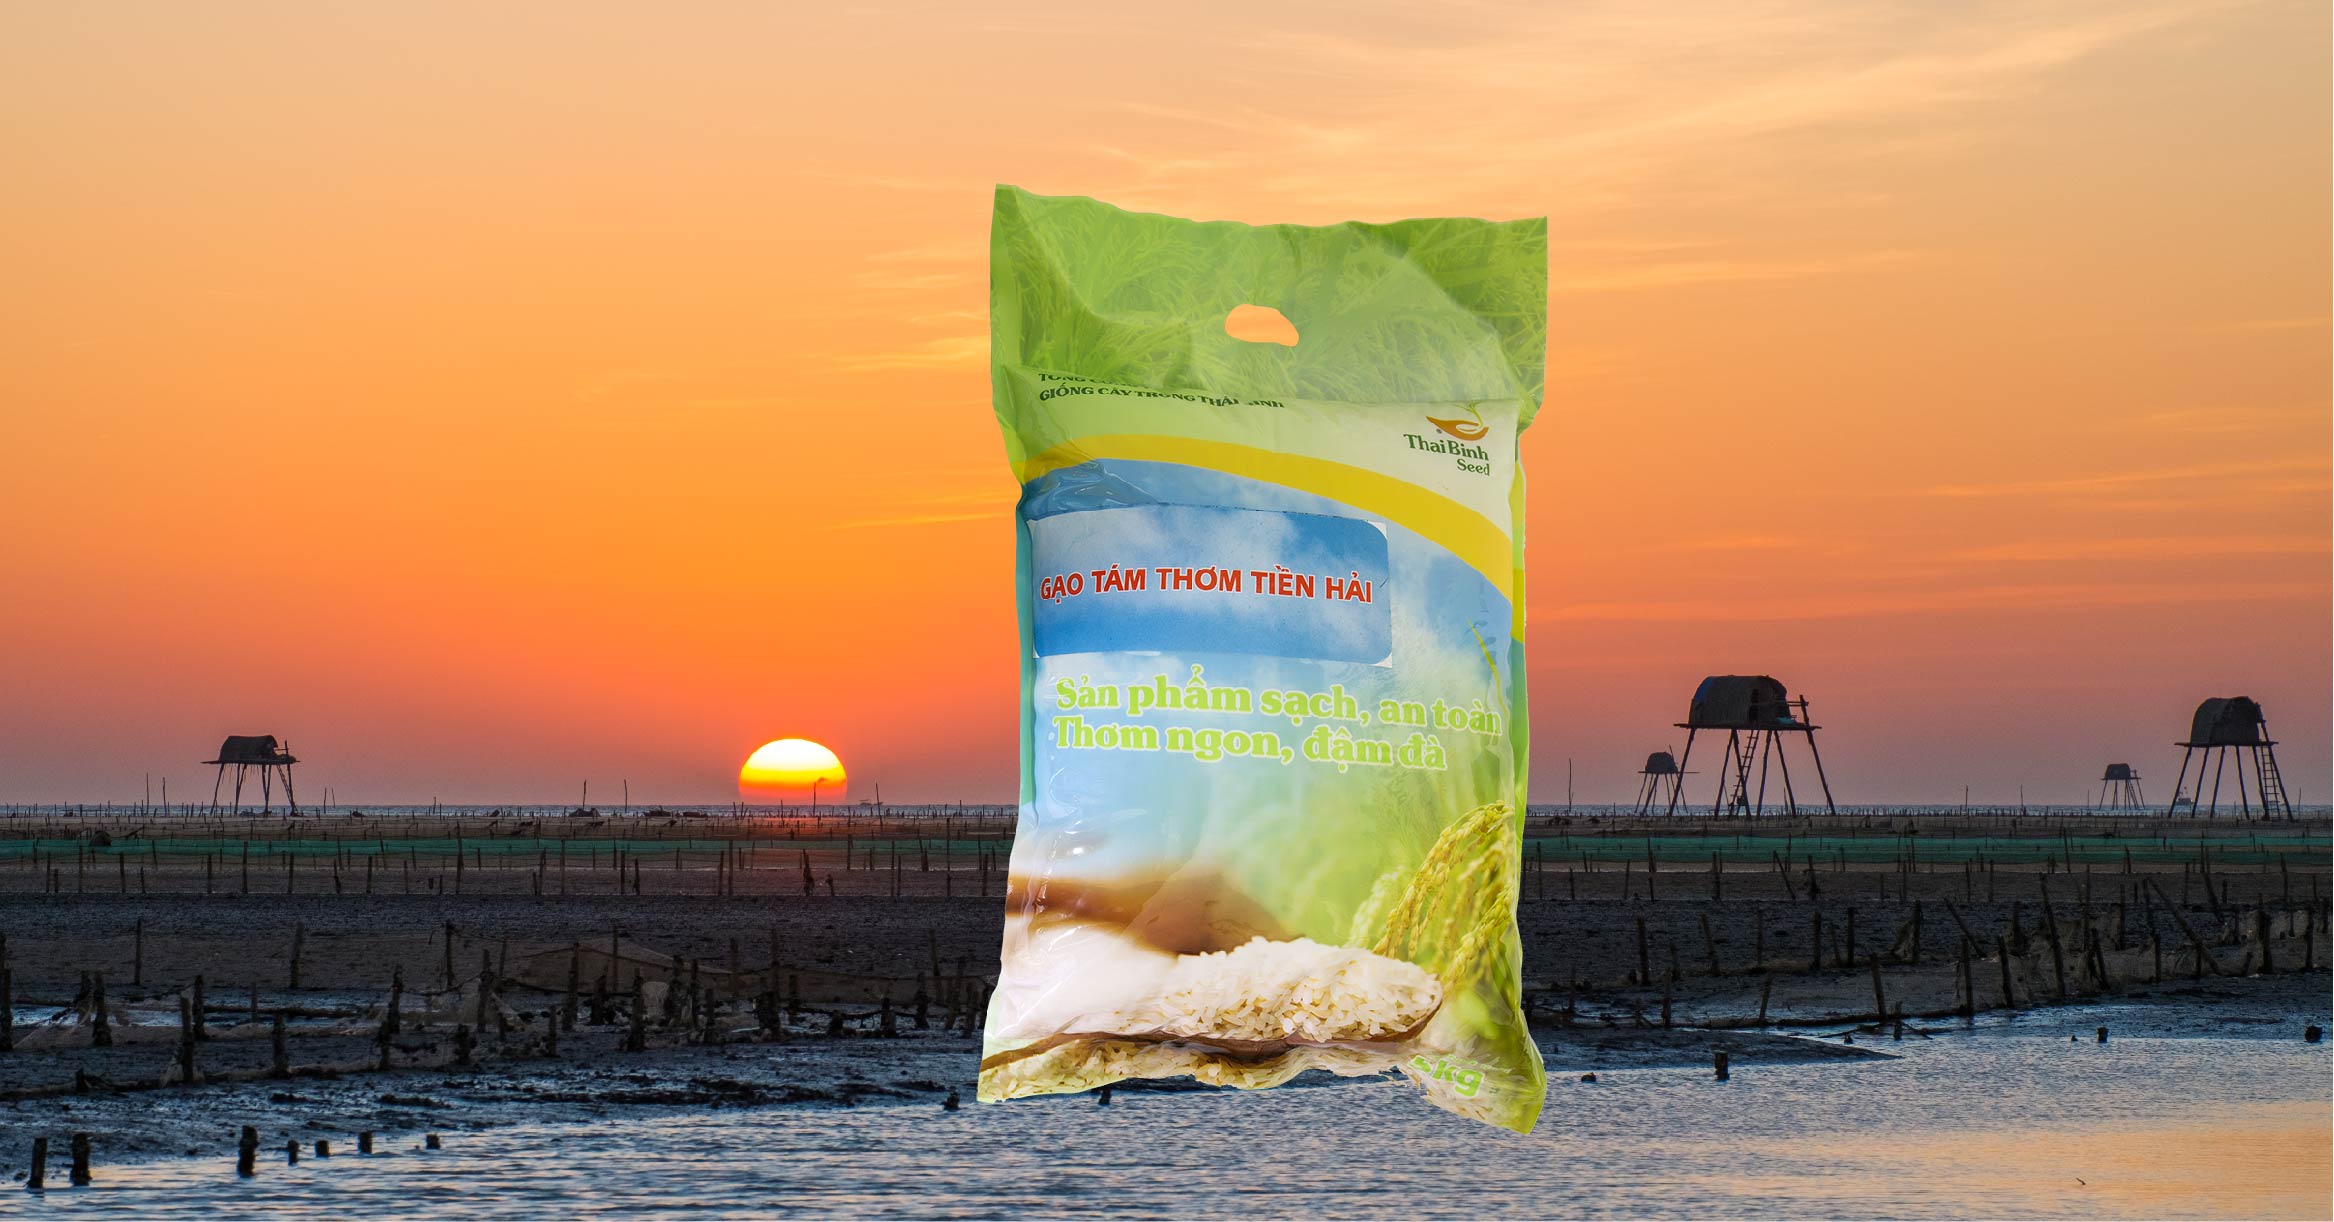 Top 5 loại gạo ngon sạch nguyên chất cho người sành ăn tin-tuc 